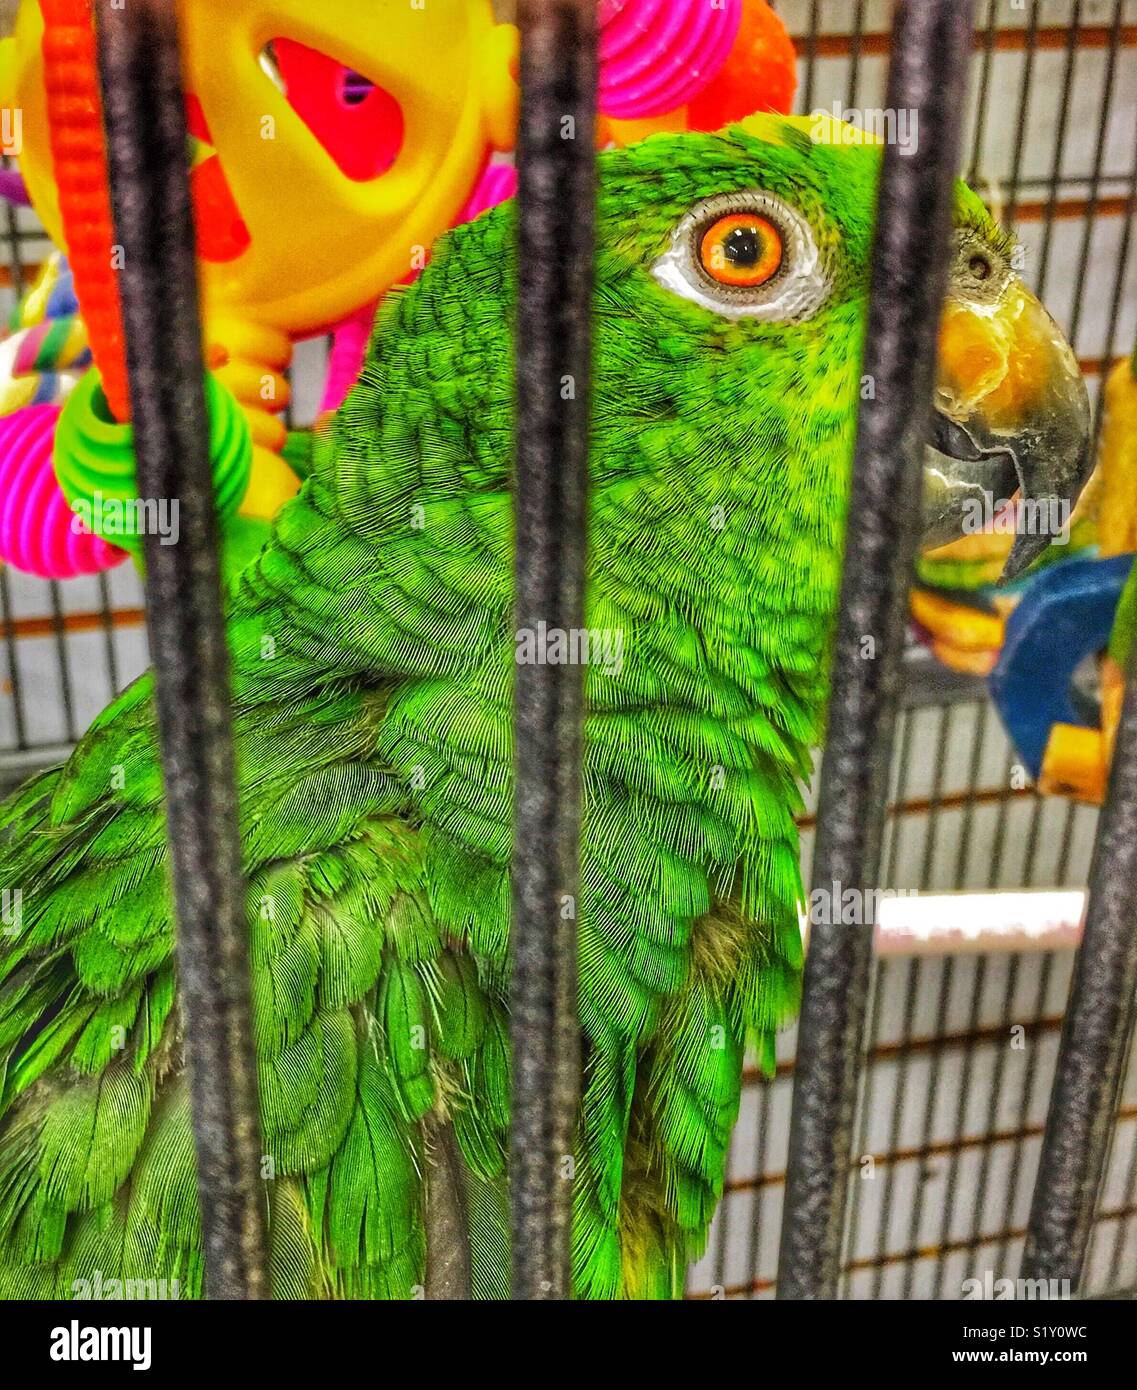 À couronne jaune Amazon parrot avec des yeux l'air de derrière les barreaux  de la cage Photo Stock - Alamy